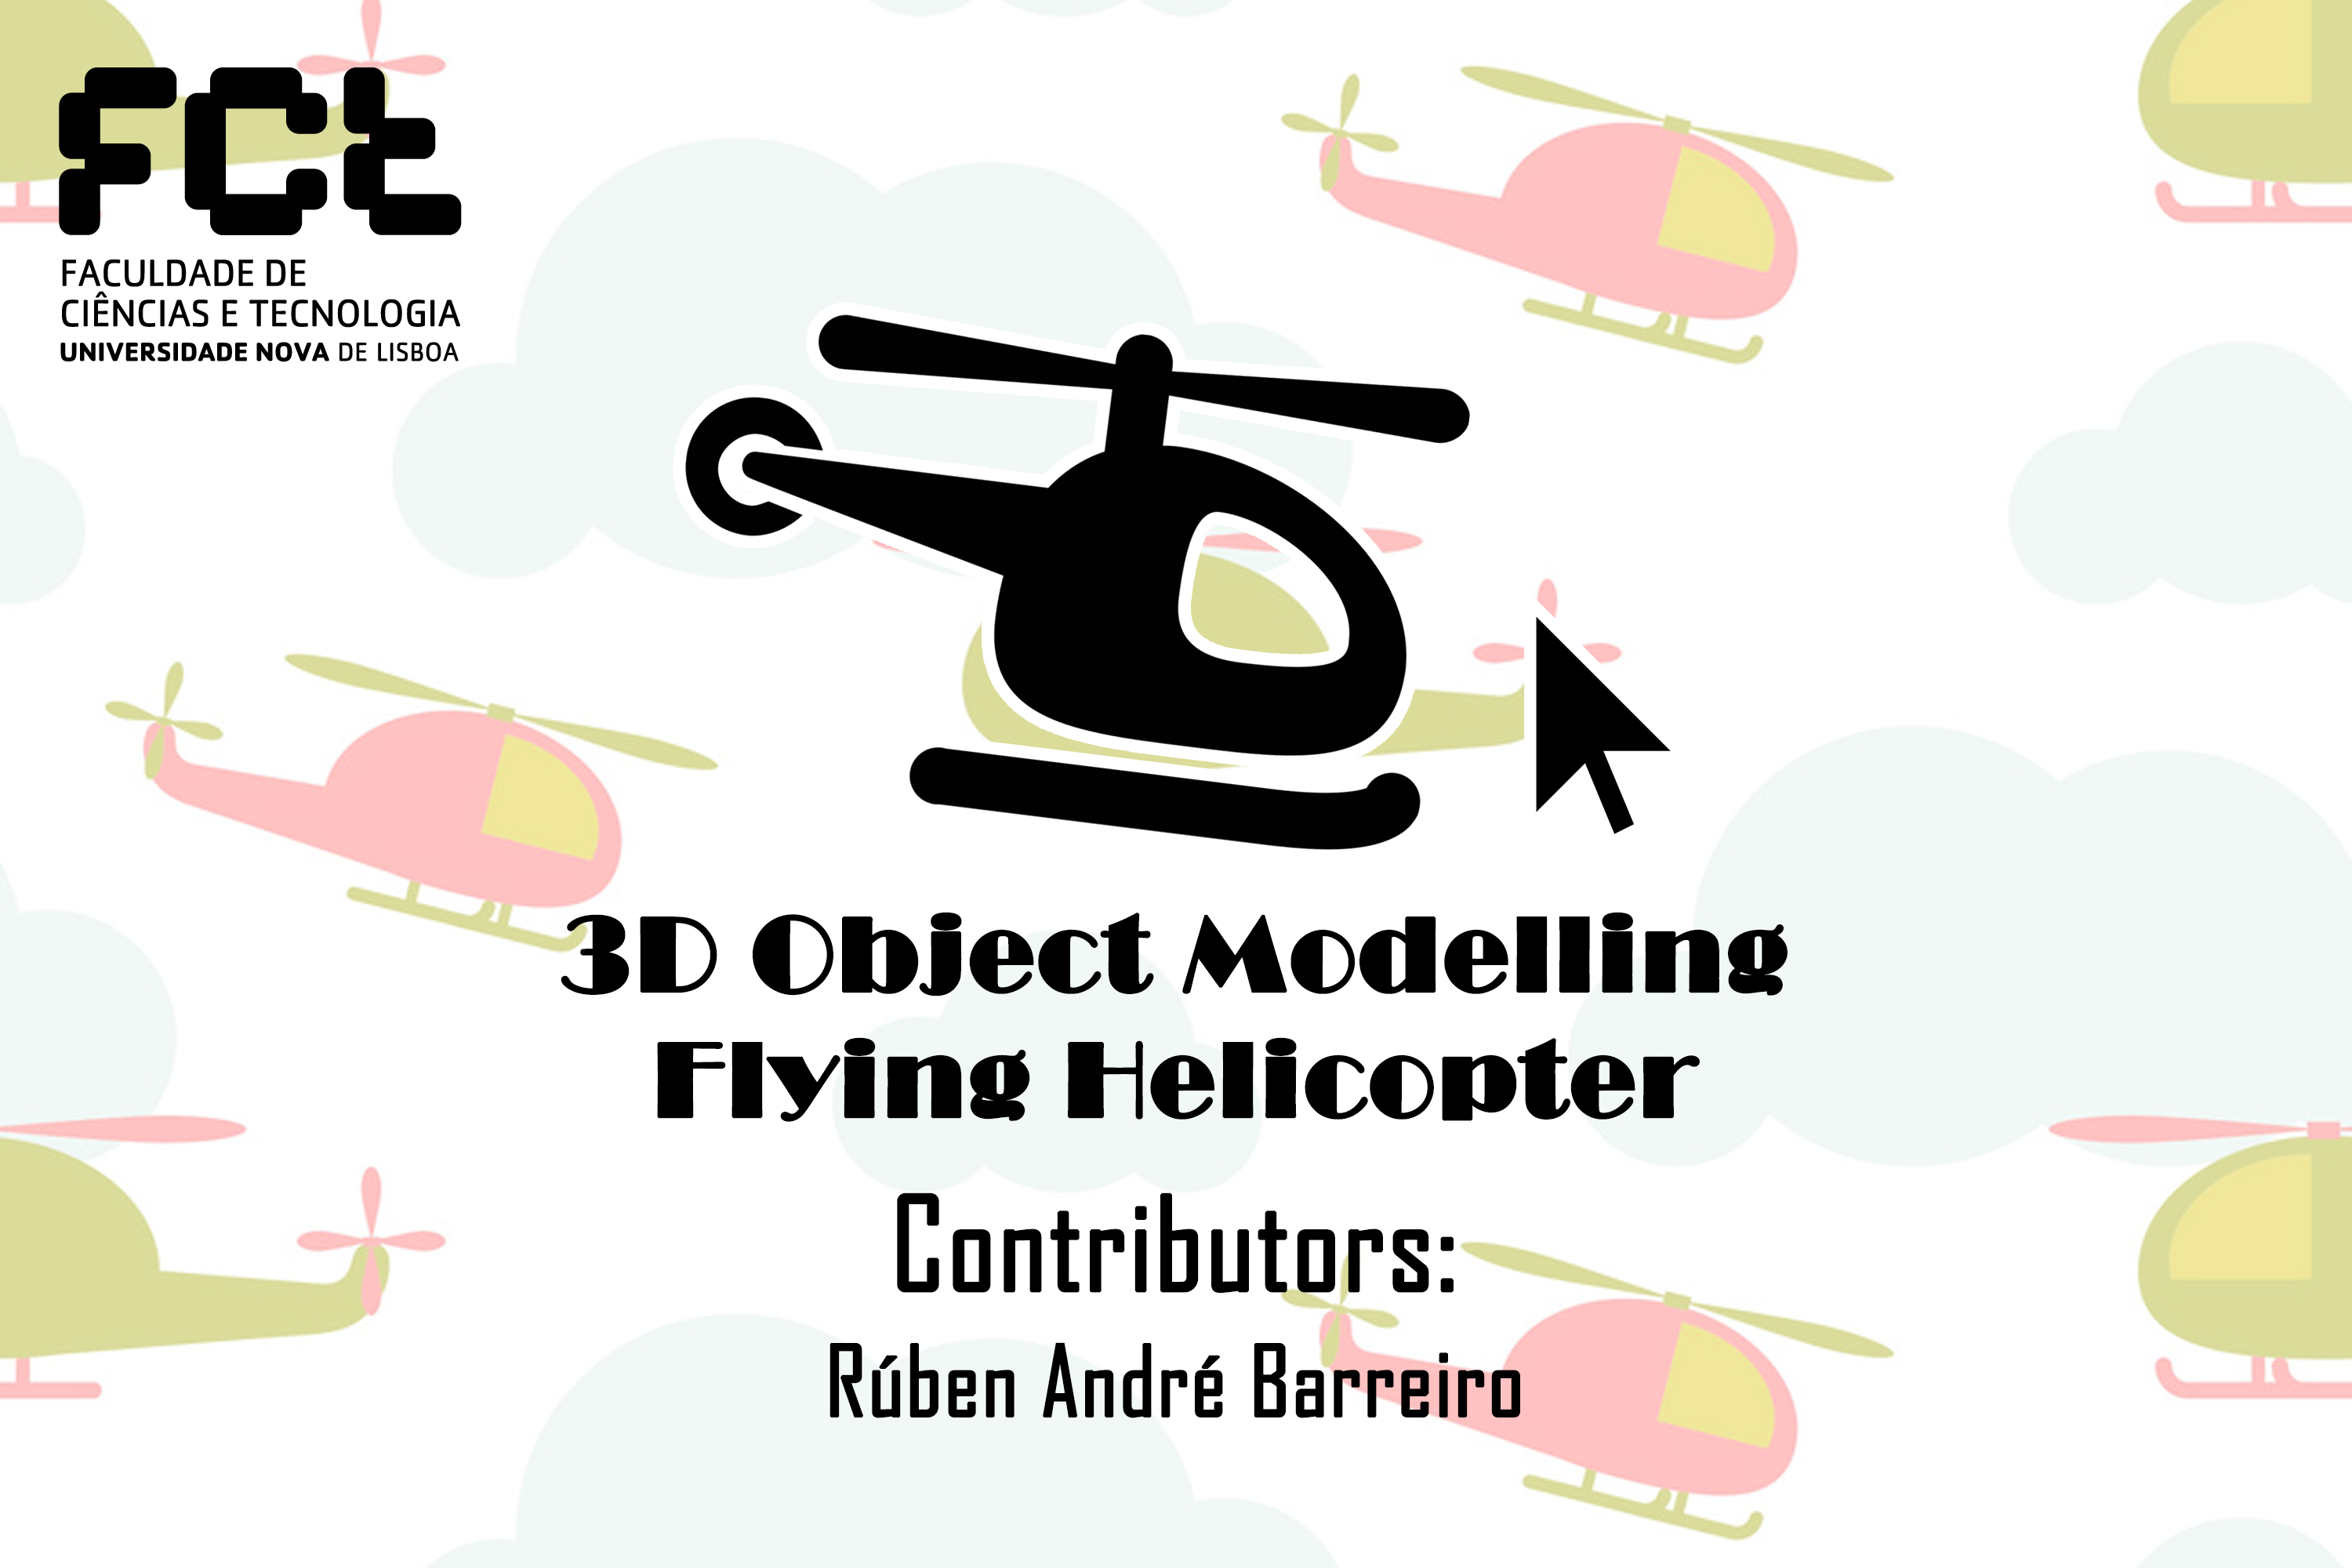 https://raw.githubusercontent.com/rubenandrebarreiro/3d-object-modelling-flying-helicopter/master/imgs/JPGs/banner-1.jpg